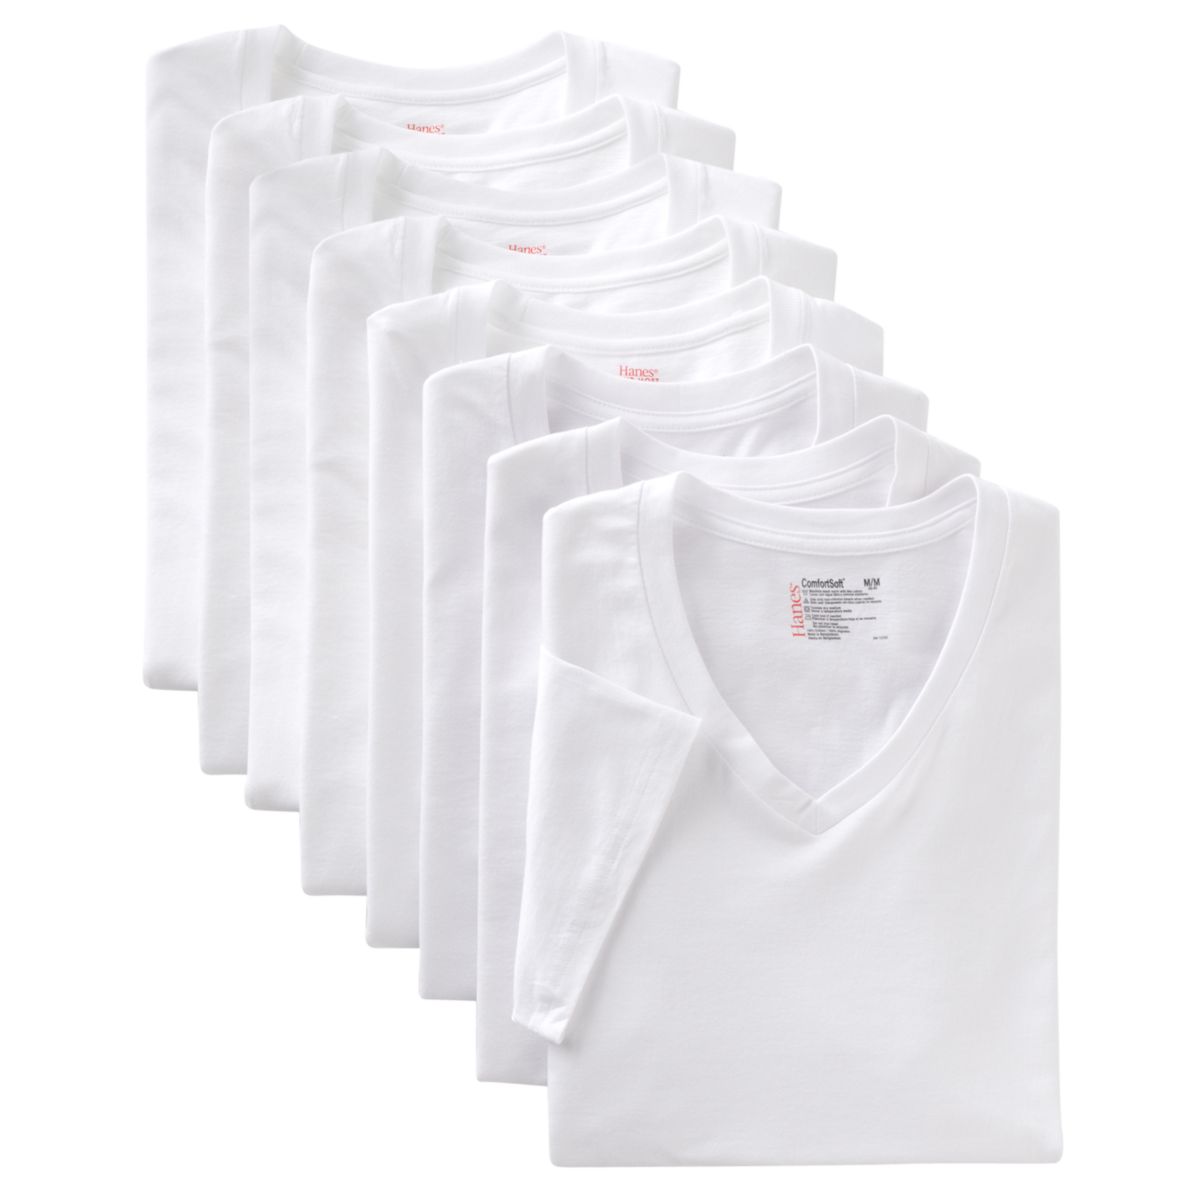 Мужские футболки Hanes® Classics из 6 шт. + 2 бонусных футболки ComfortSoft с V-образным вырезом Hanes